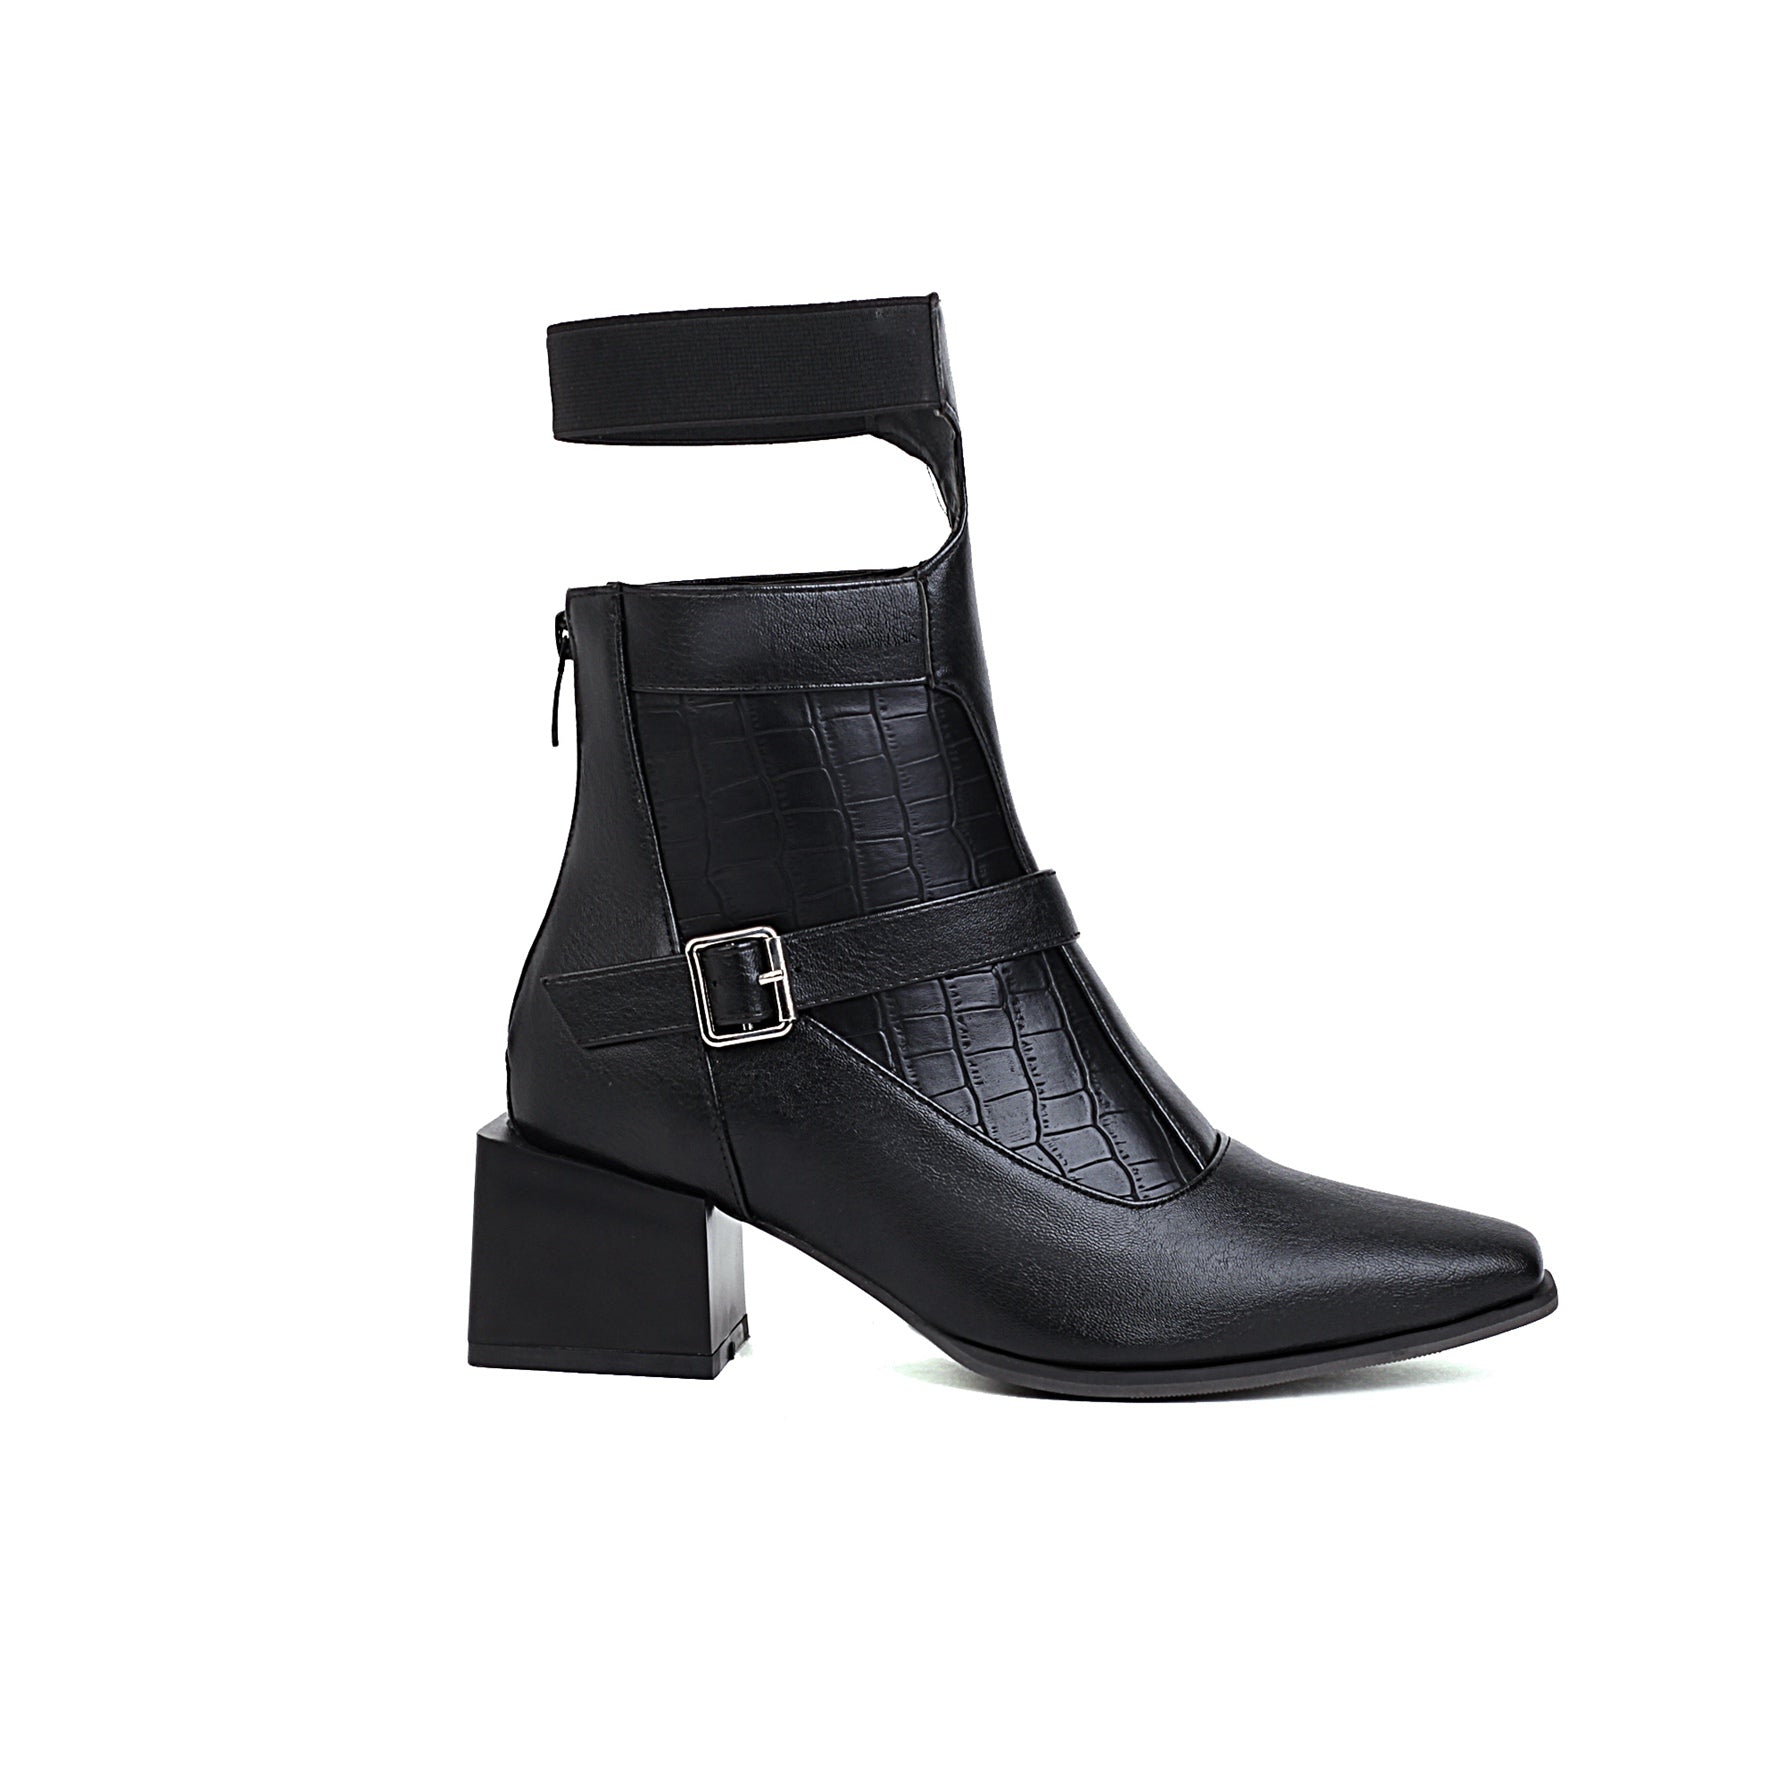 Bigsizeheels Asxl magazine square toe leather ankle boots - Black freeshipping - bigsizeheel®-size5-size15 -All Plus Sizes Available!